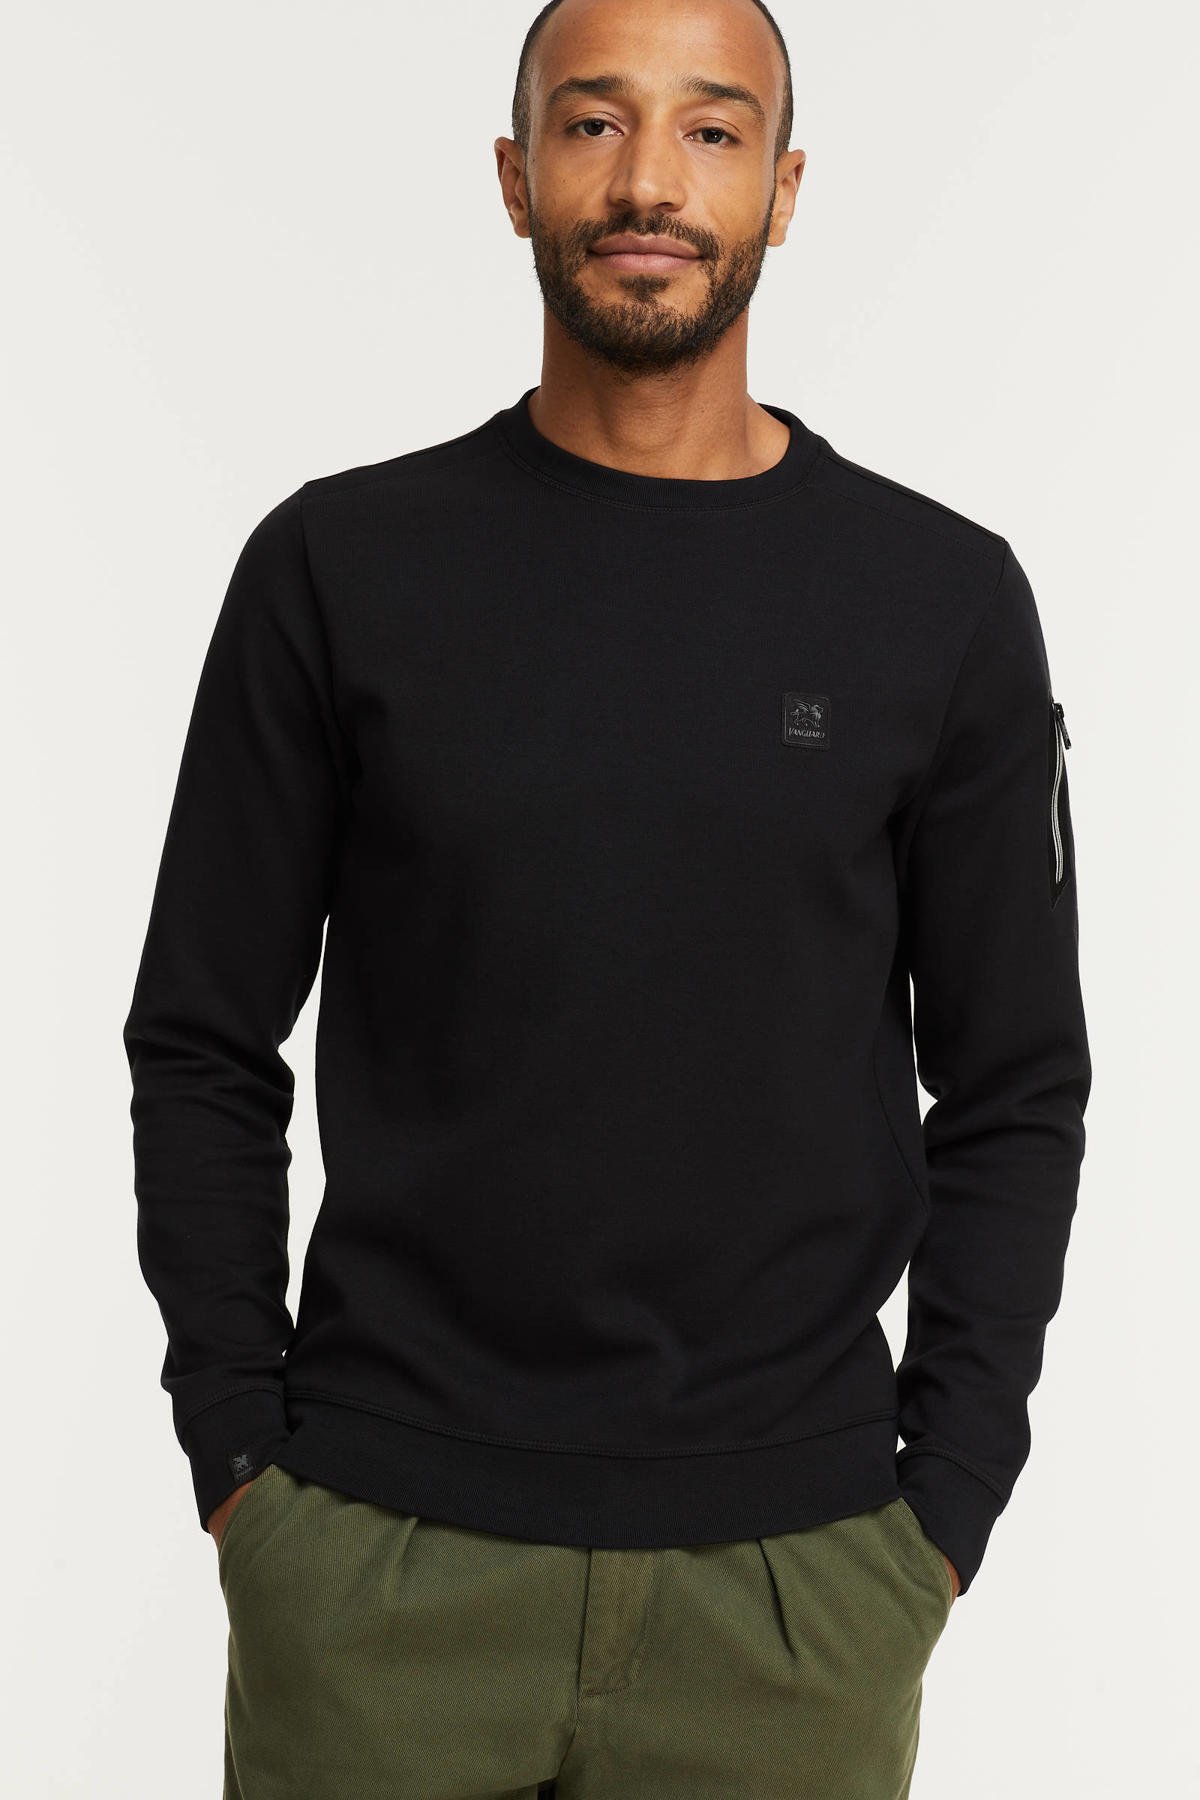 Vanguard sweater 999 zwart wehkamp